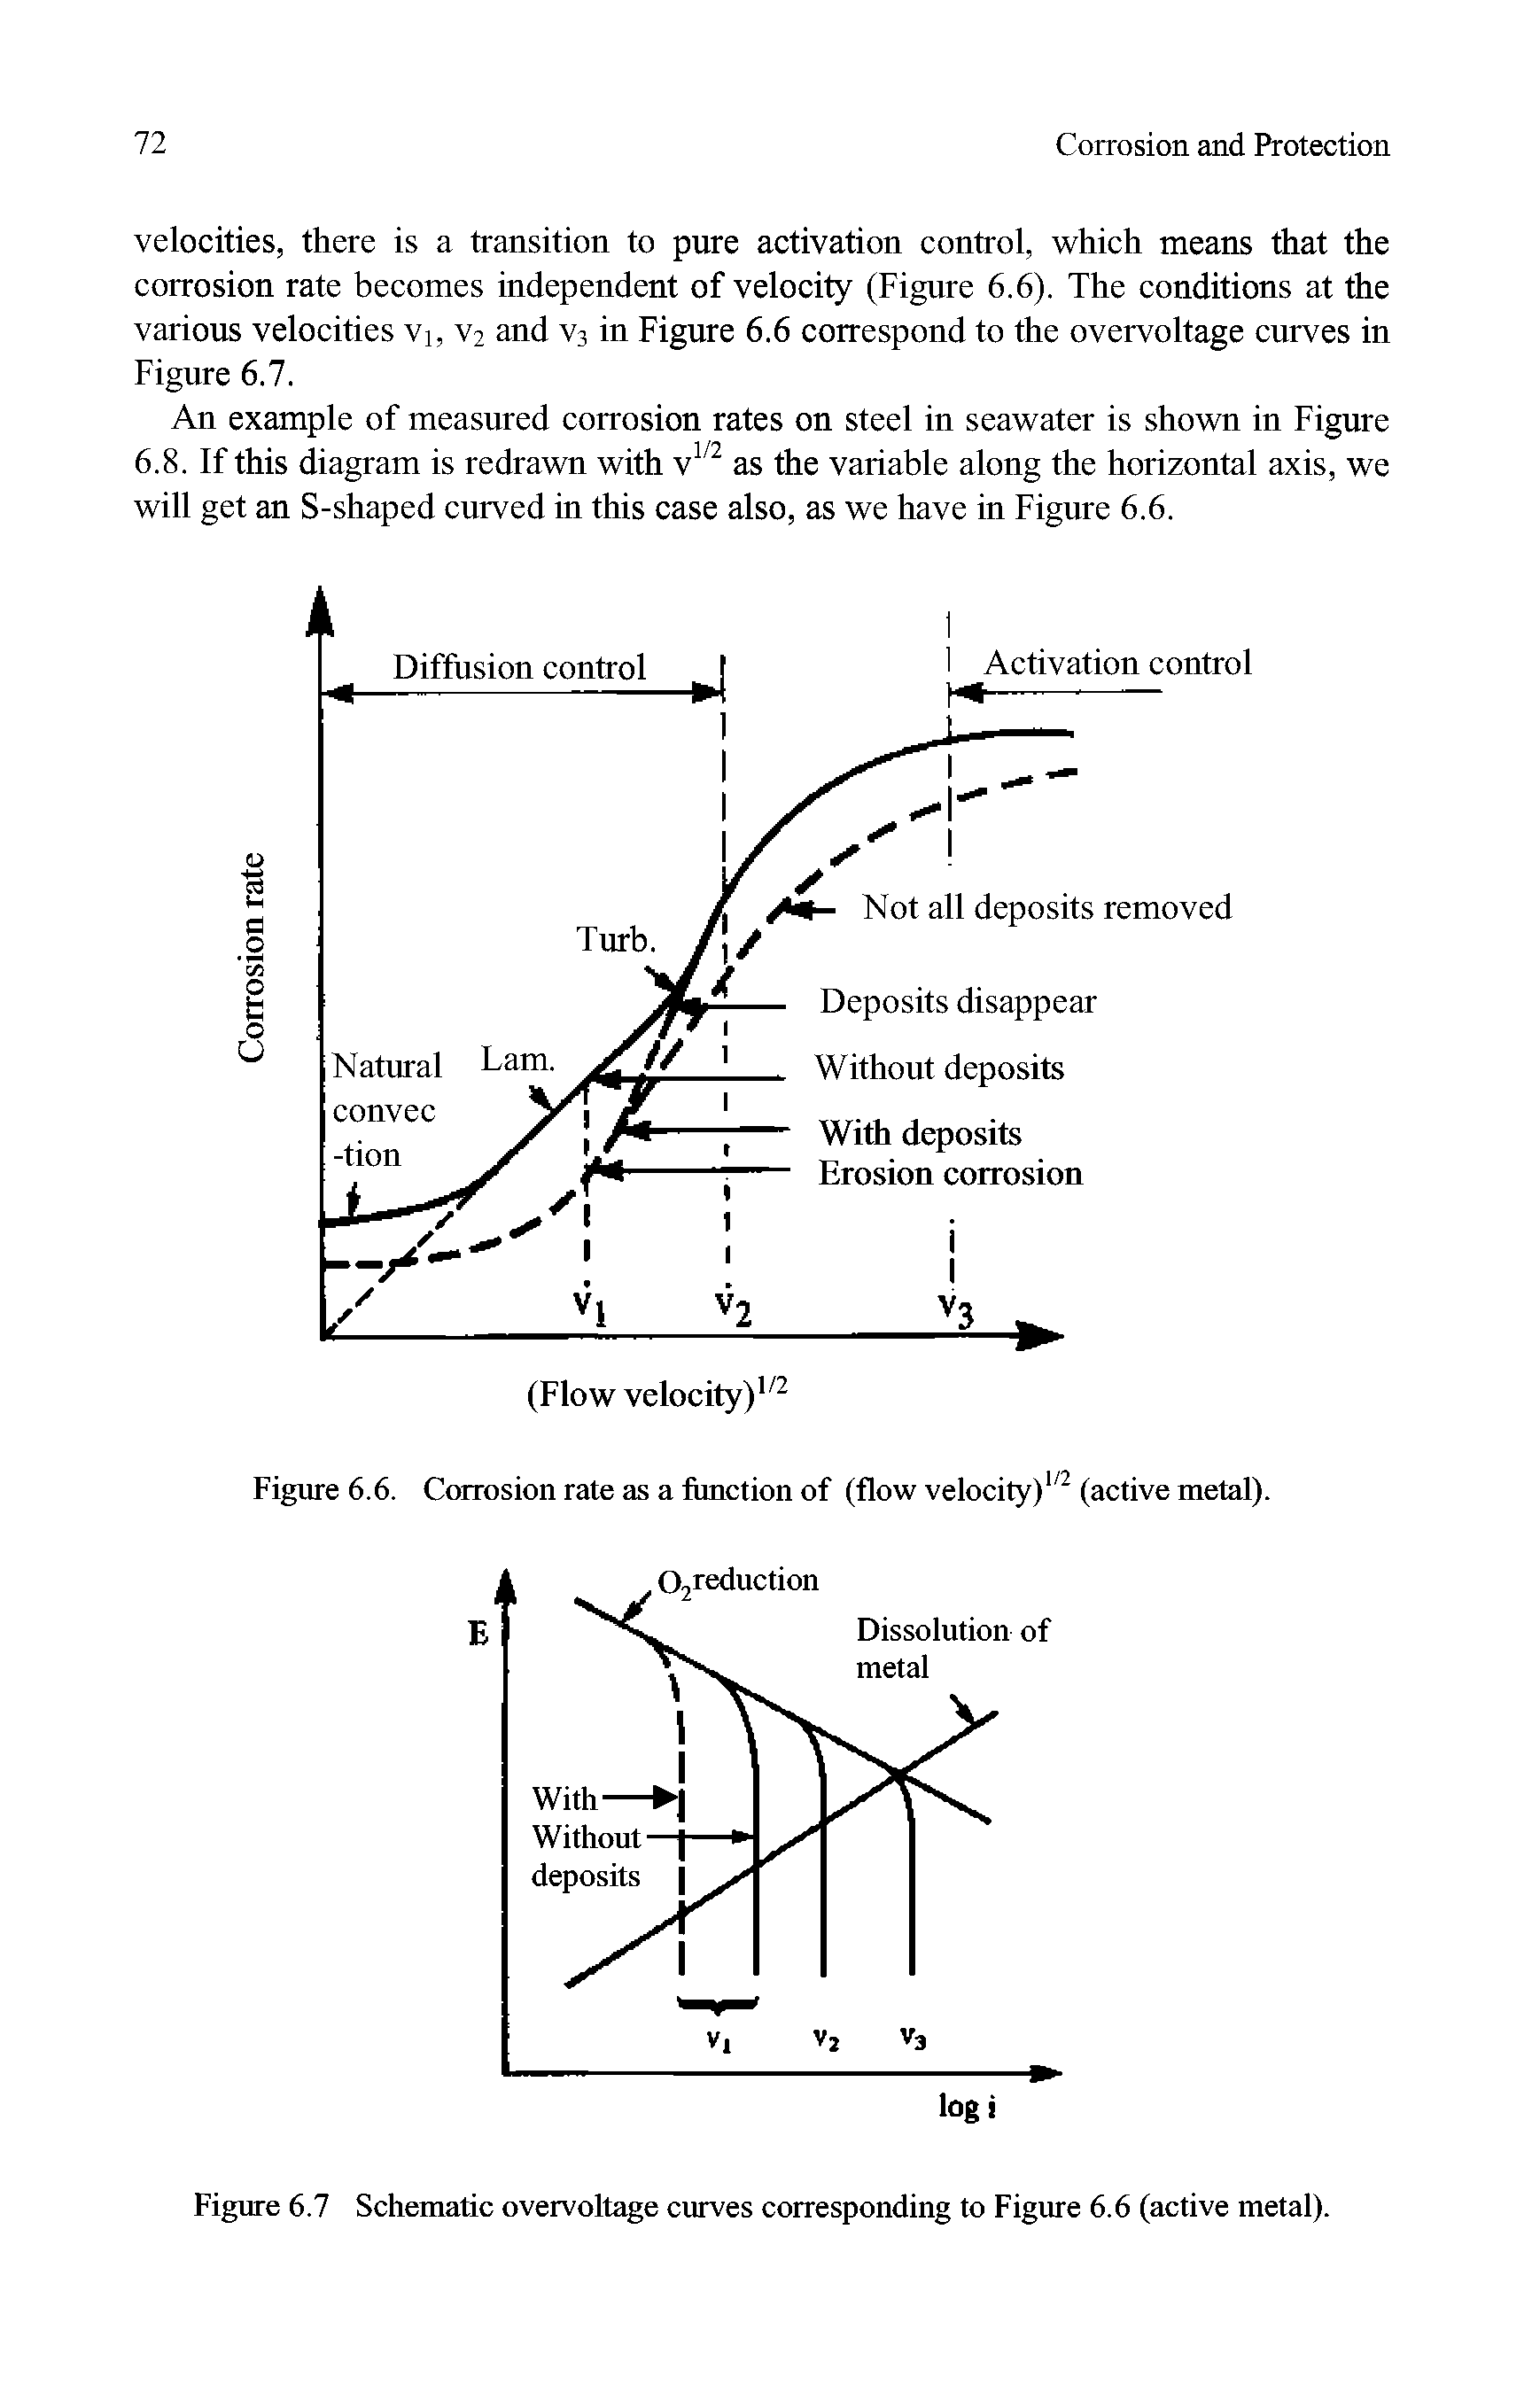 Figure 6.7 Schematic overvoltage curves corresponding to Figure 6.6 (active metal).